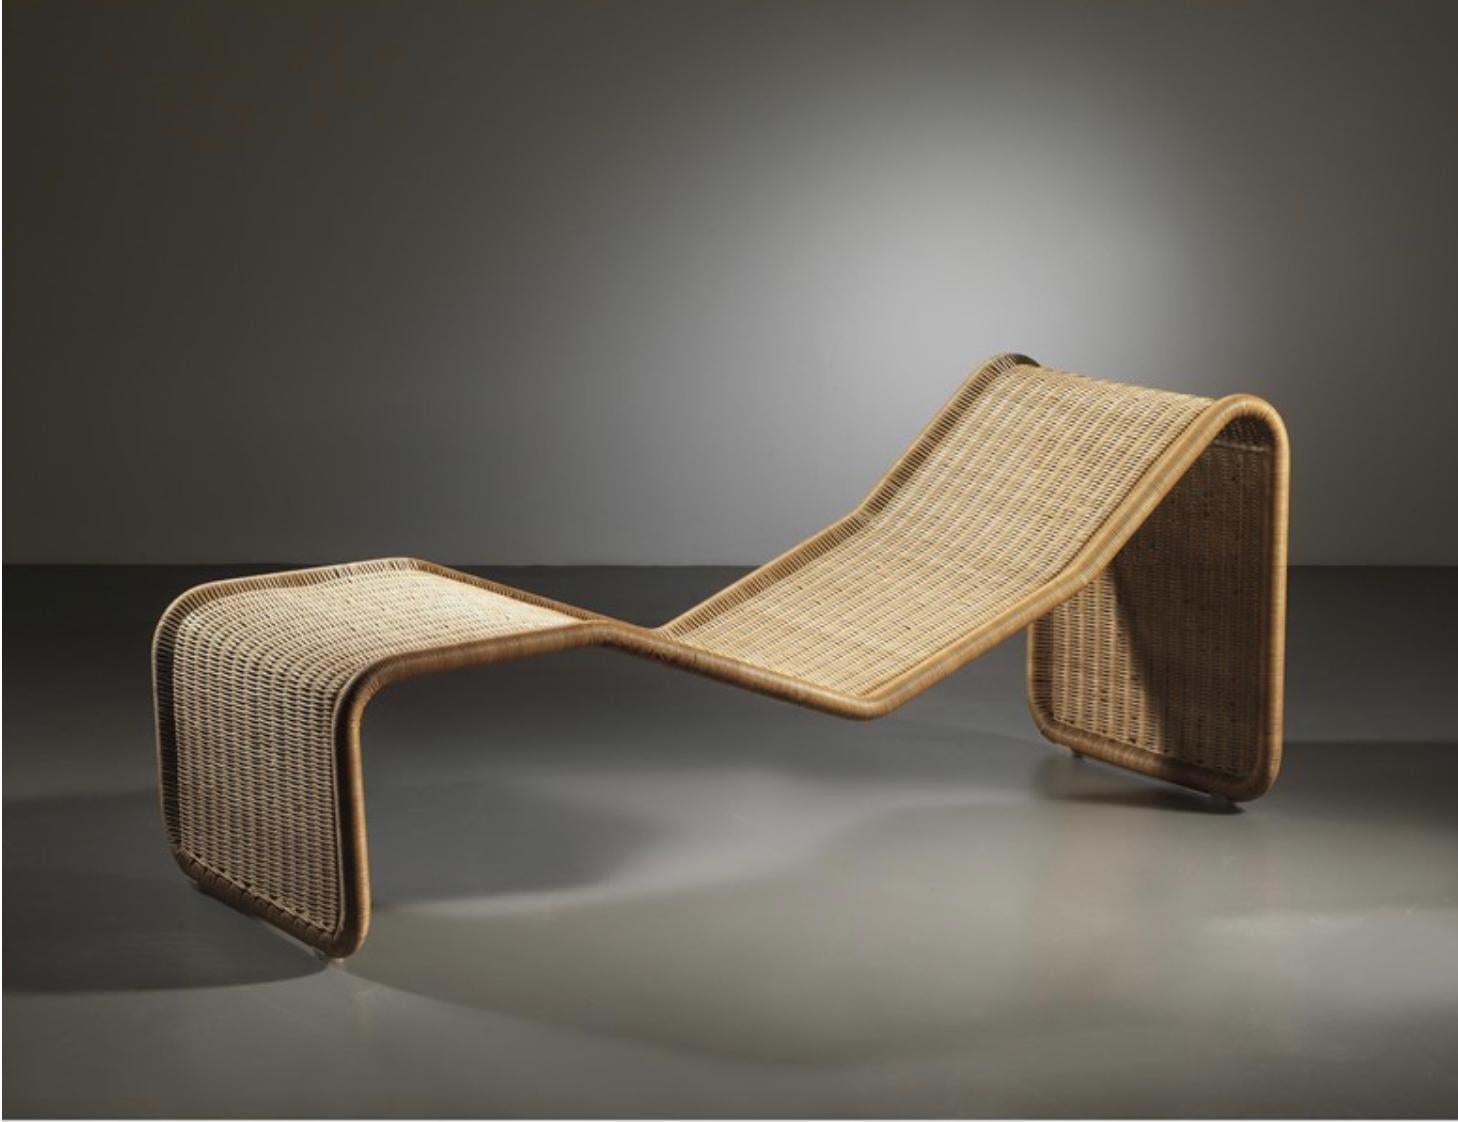 P3S Rattan Lounge Chair von Tito Agnoli für Bonacina, Italien  1960s

Eine authentische Ikone des italienischen Mid-Century-Designs, eine elegante und raffinierte Chaiselongue, die sich leicht an verschiedene Wohnumgebungen anpassen